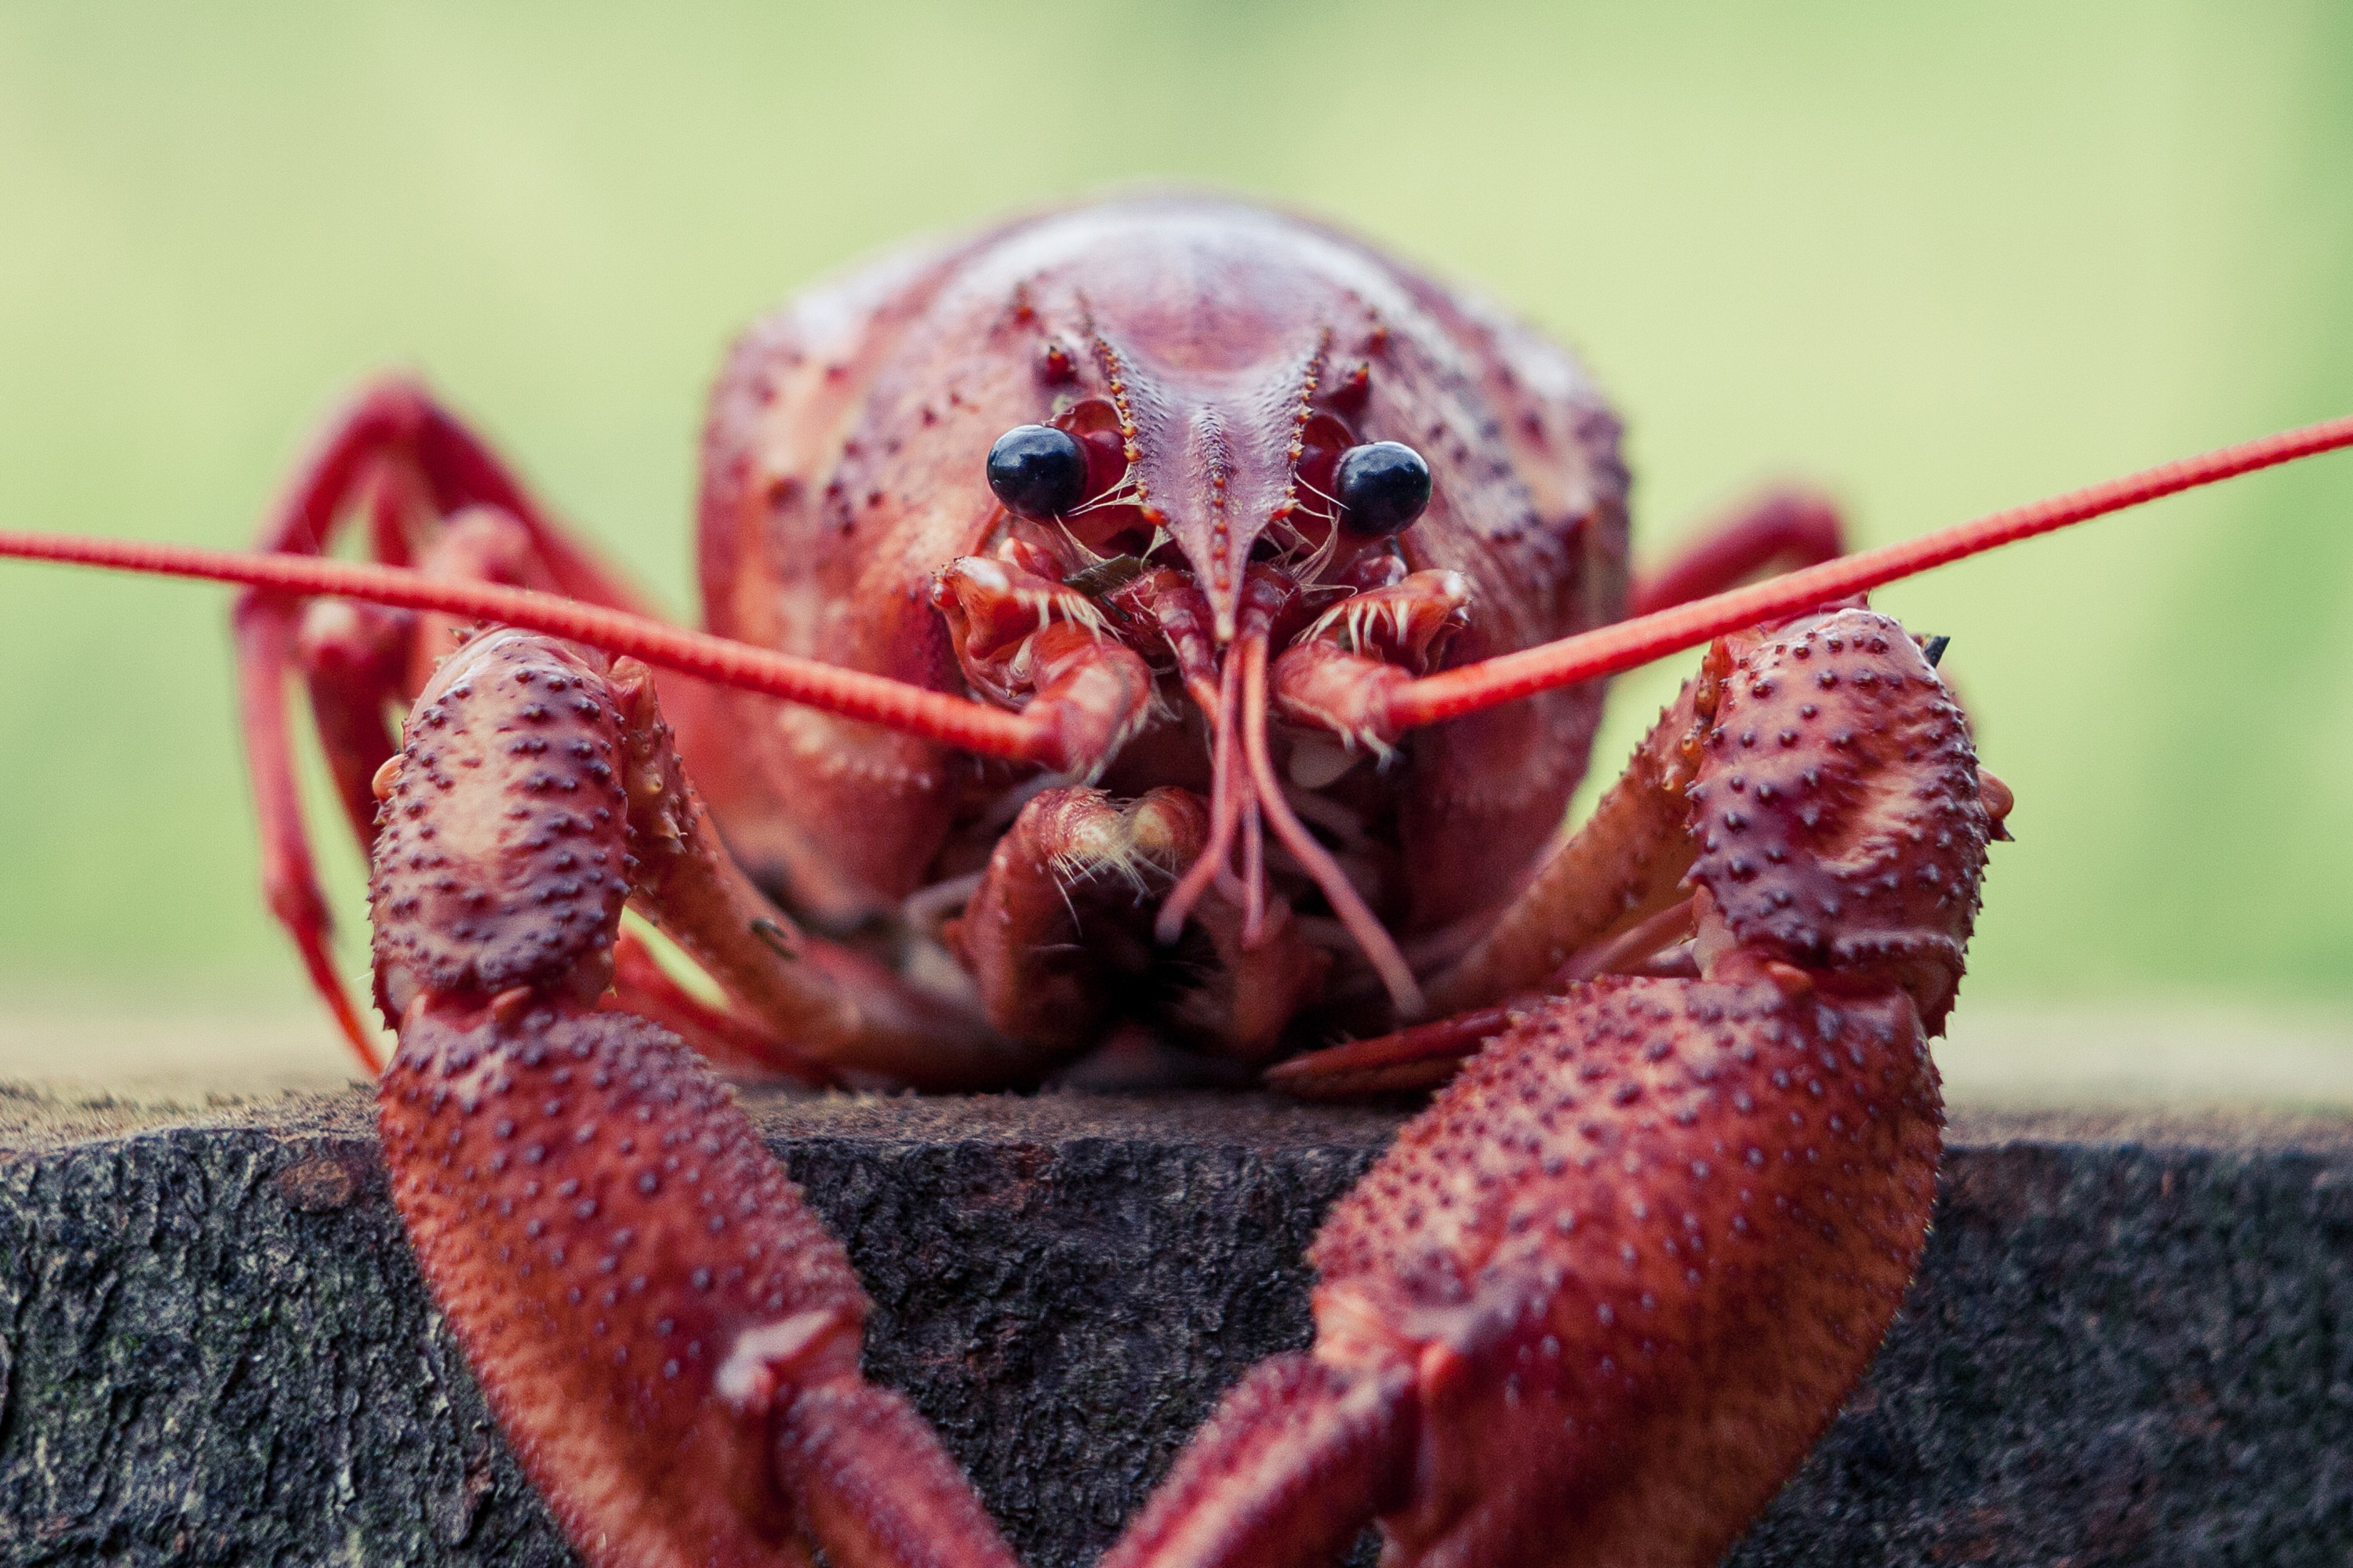 Closeup of a lobster